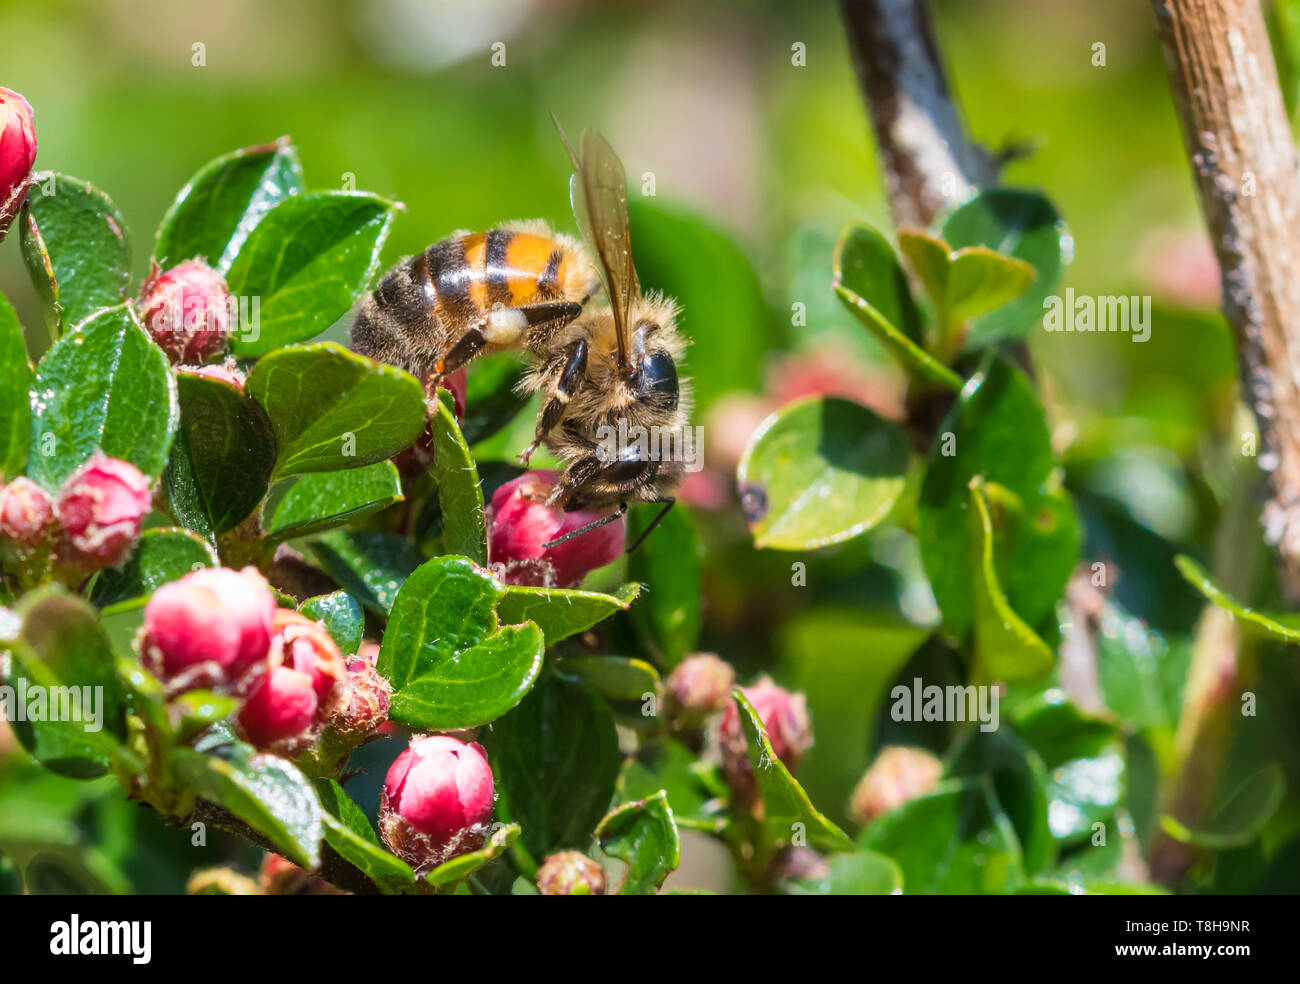 Die westliche Honigbiene (Apis mellifera), aka Europäischen Honigbiene, auf einer Pflanze mit roten Knospen im Frühjahr (Mai) in West Sussex, England, UK. Bienen. Stockfoto